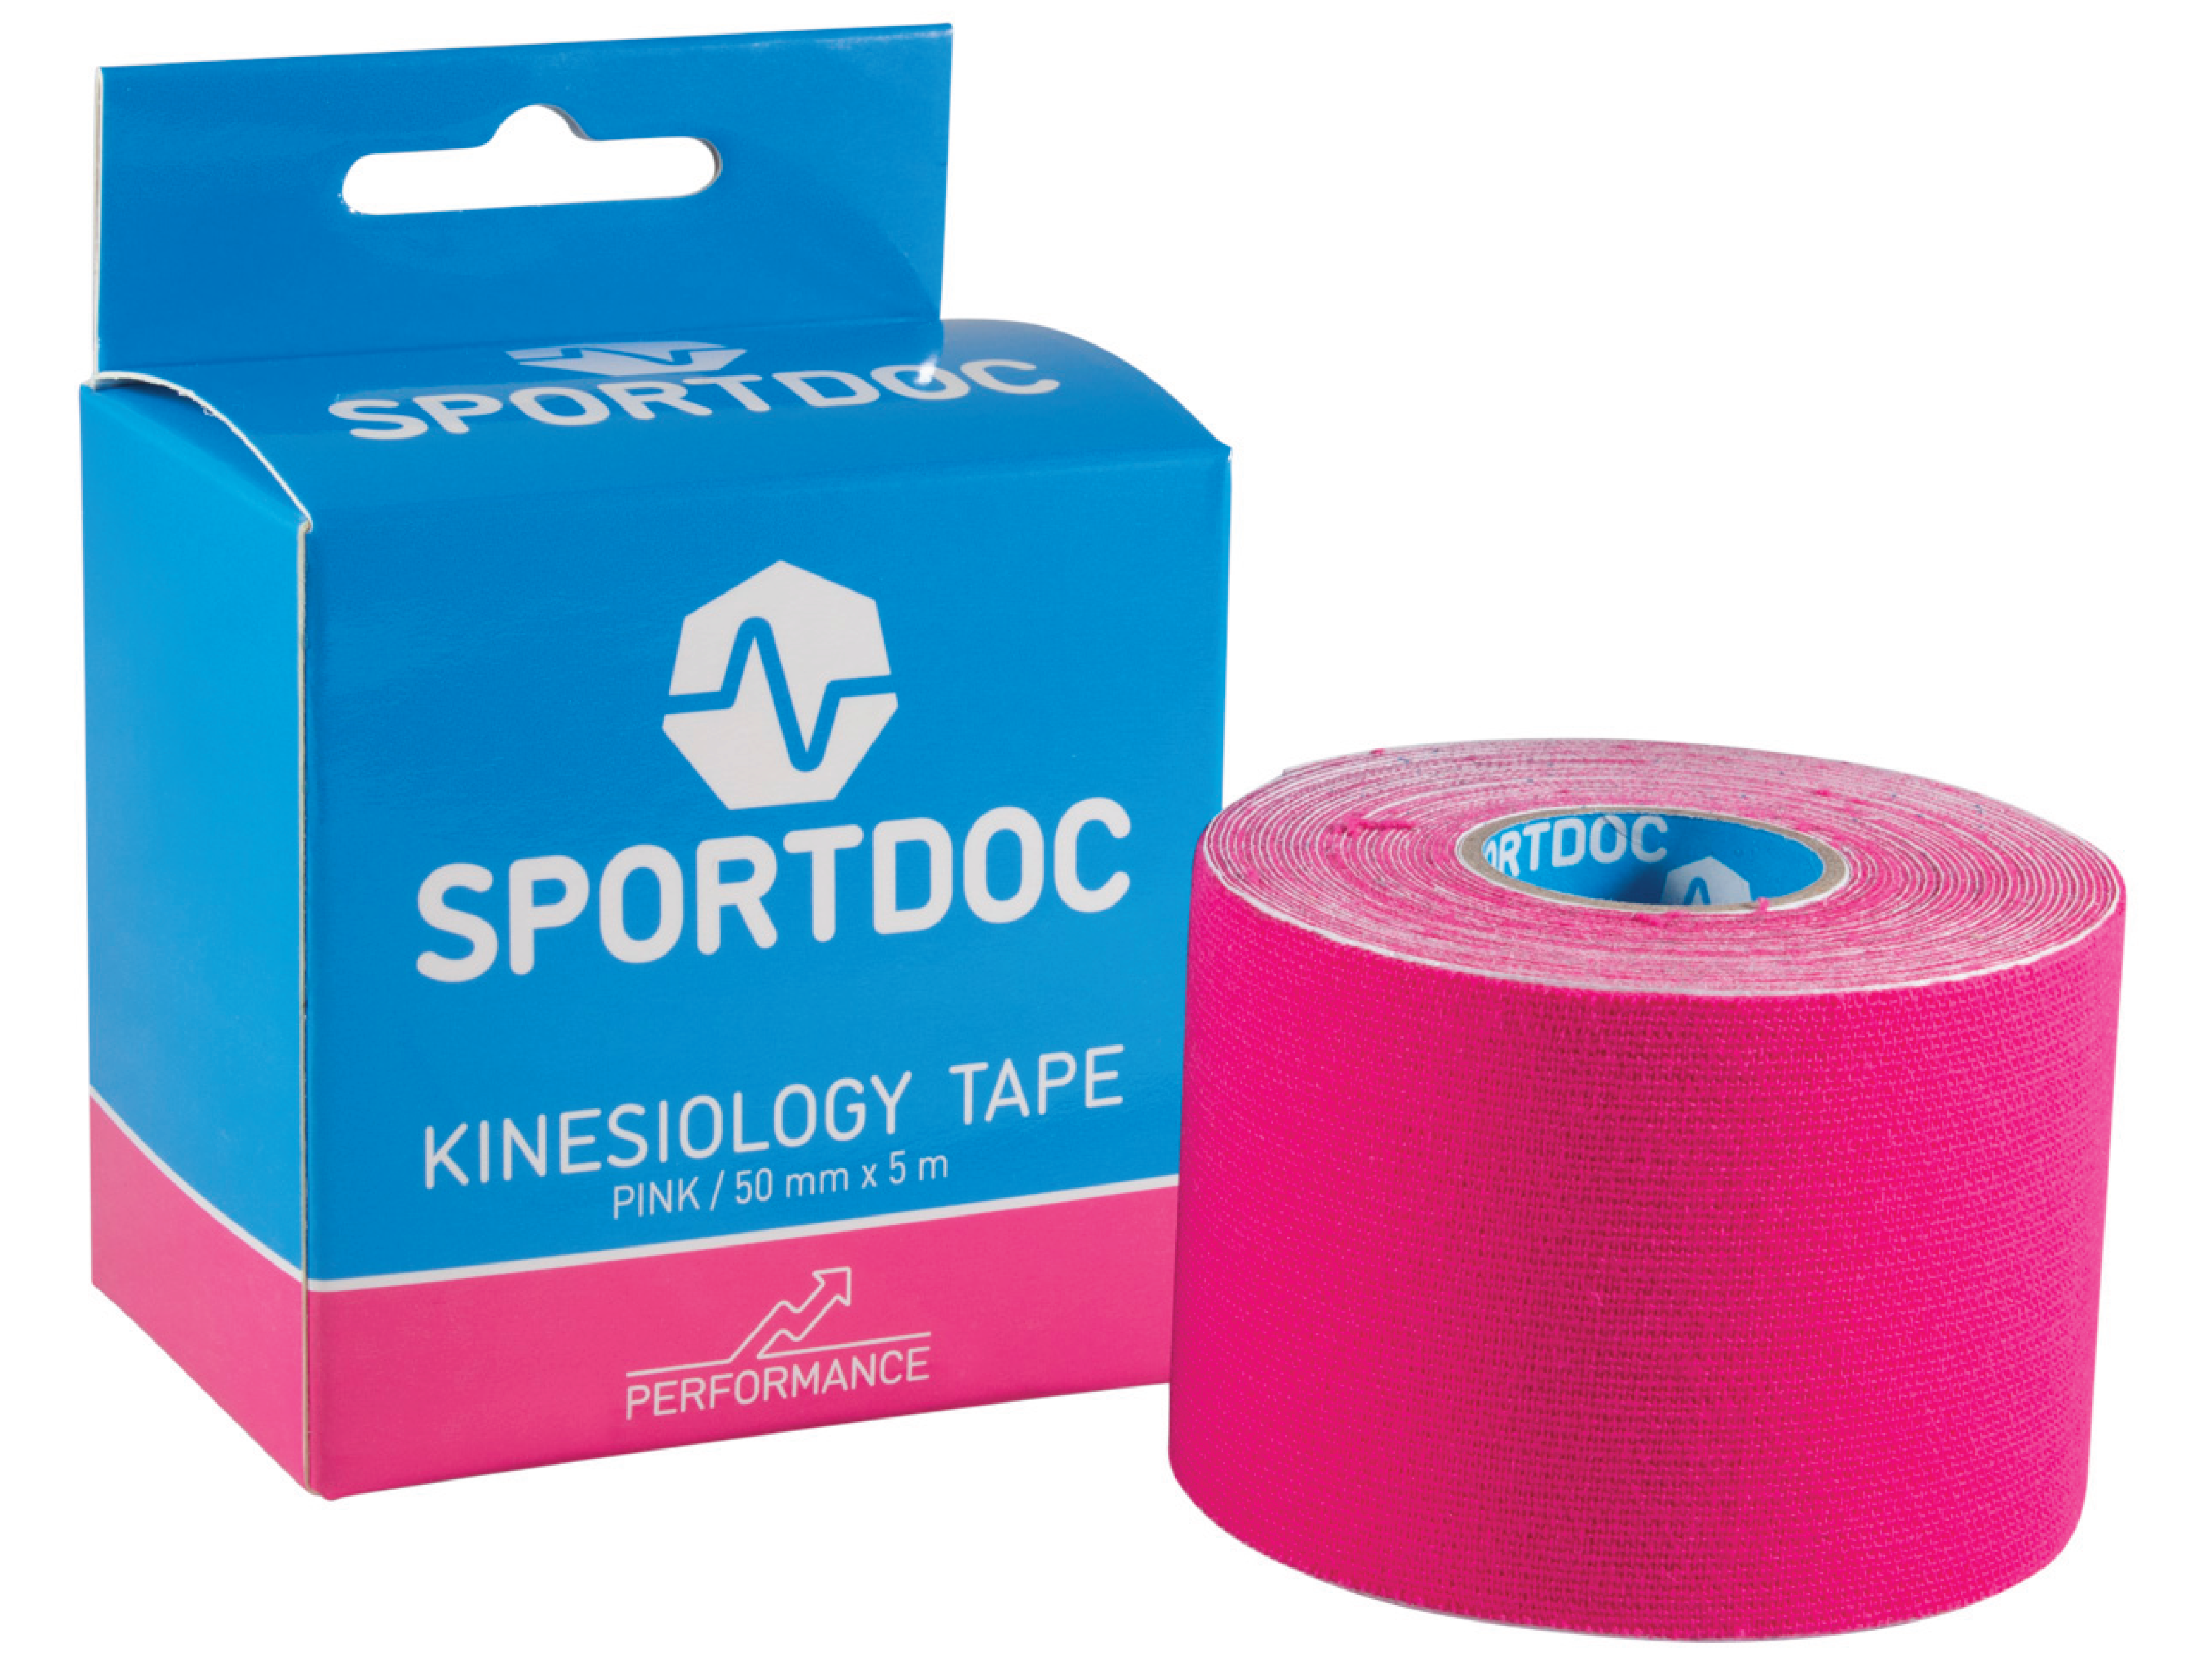 Sportdoc Kinesiology Tape, Rosa, 50 mm x 5 m, 1 stk.